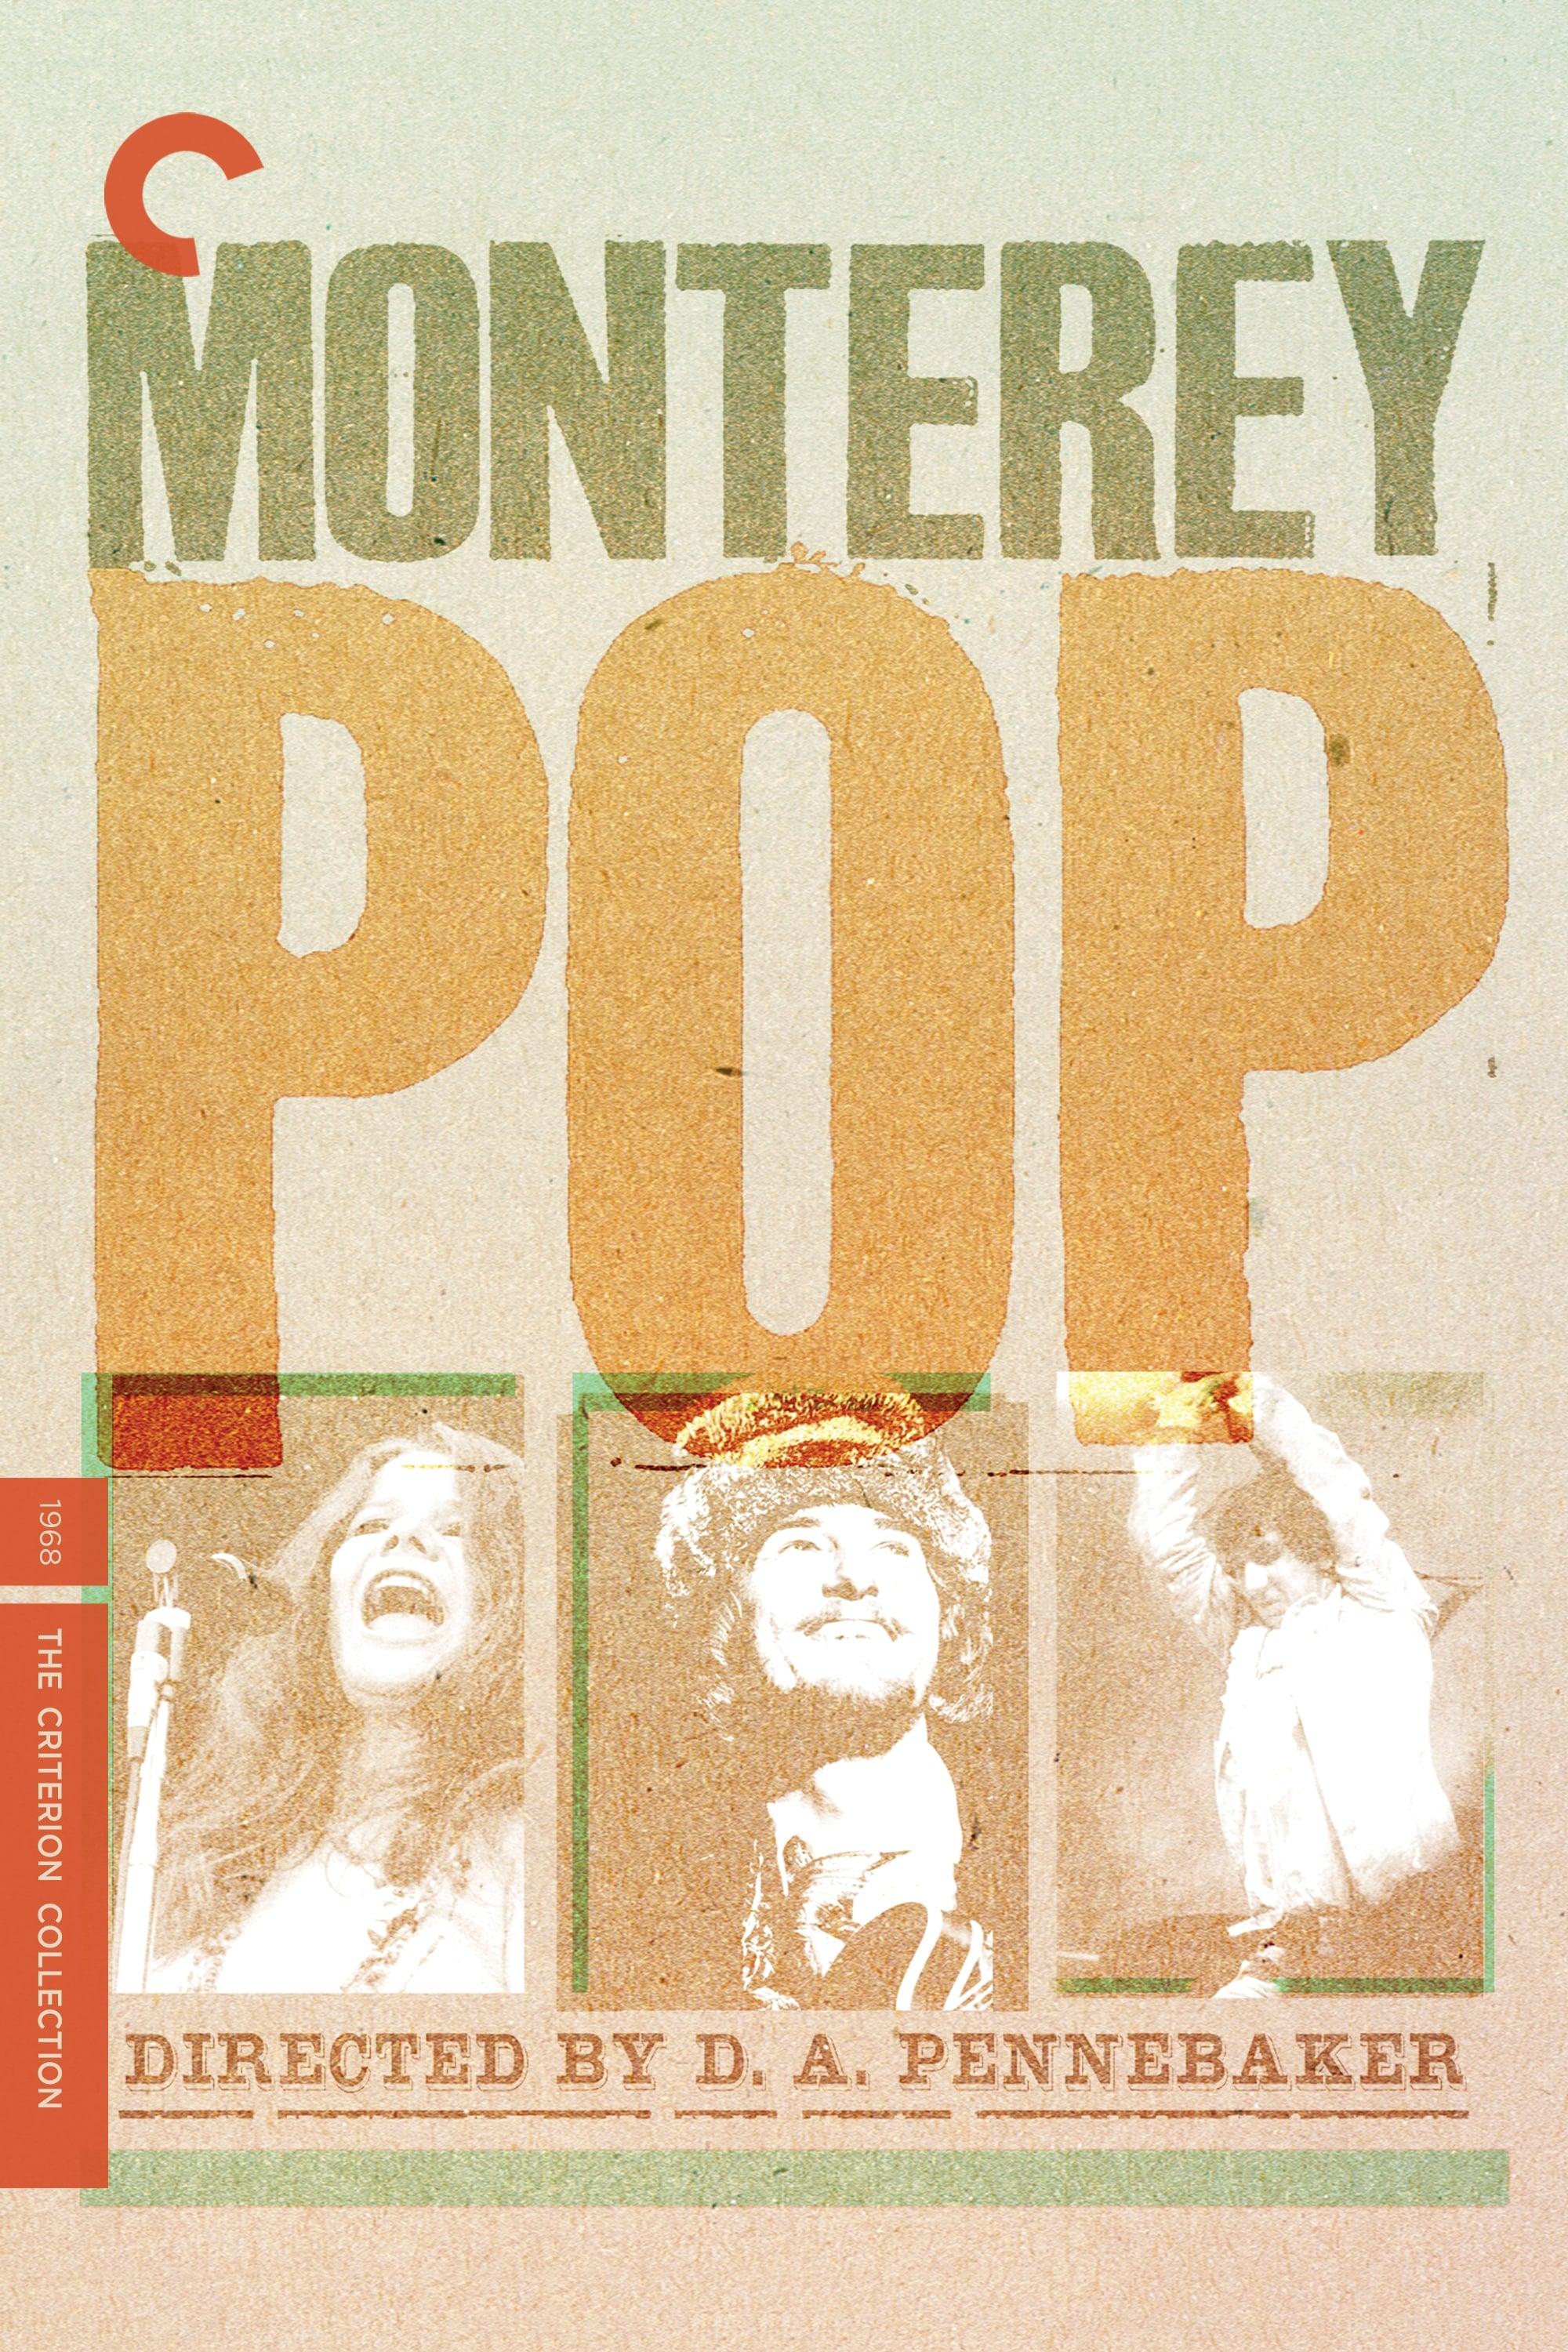 Monterey Pop poster